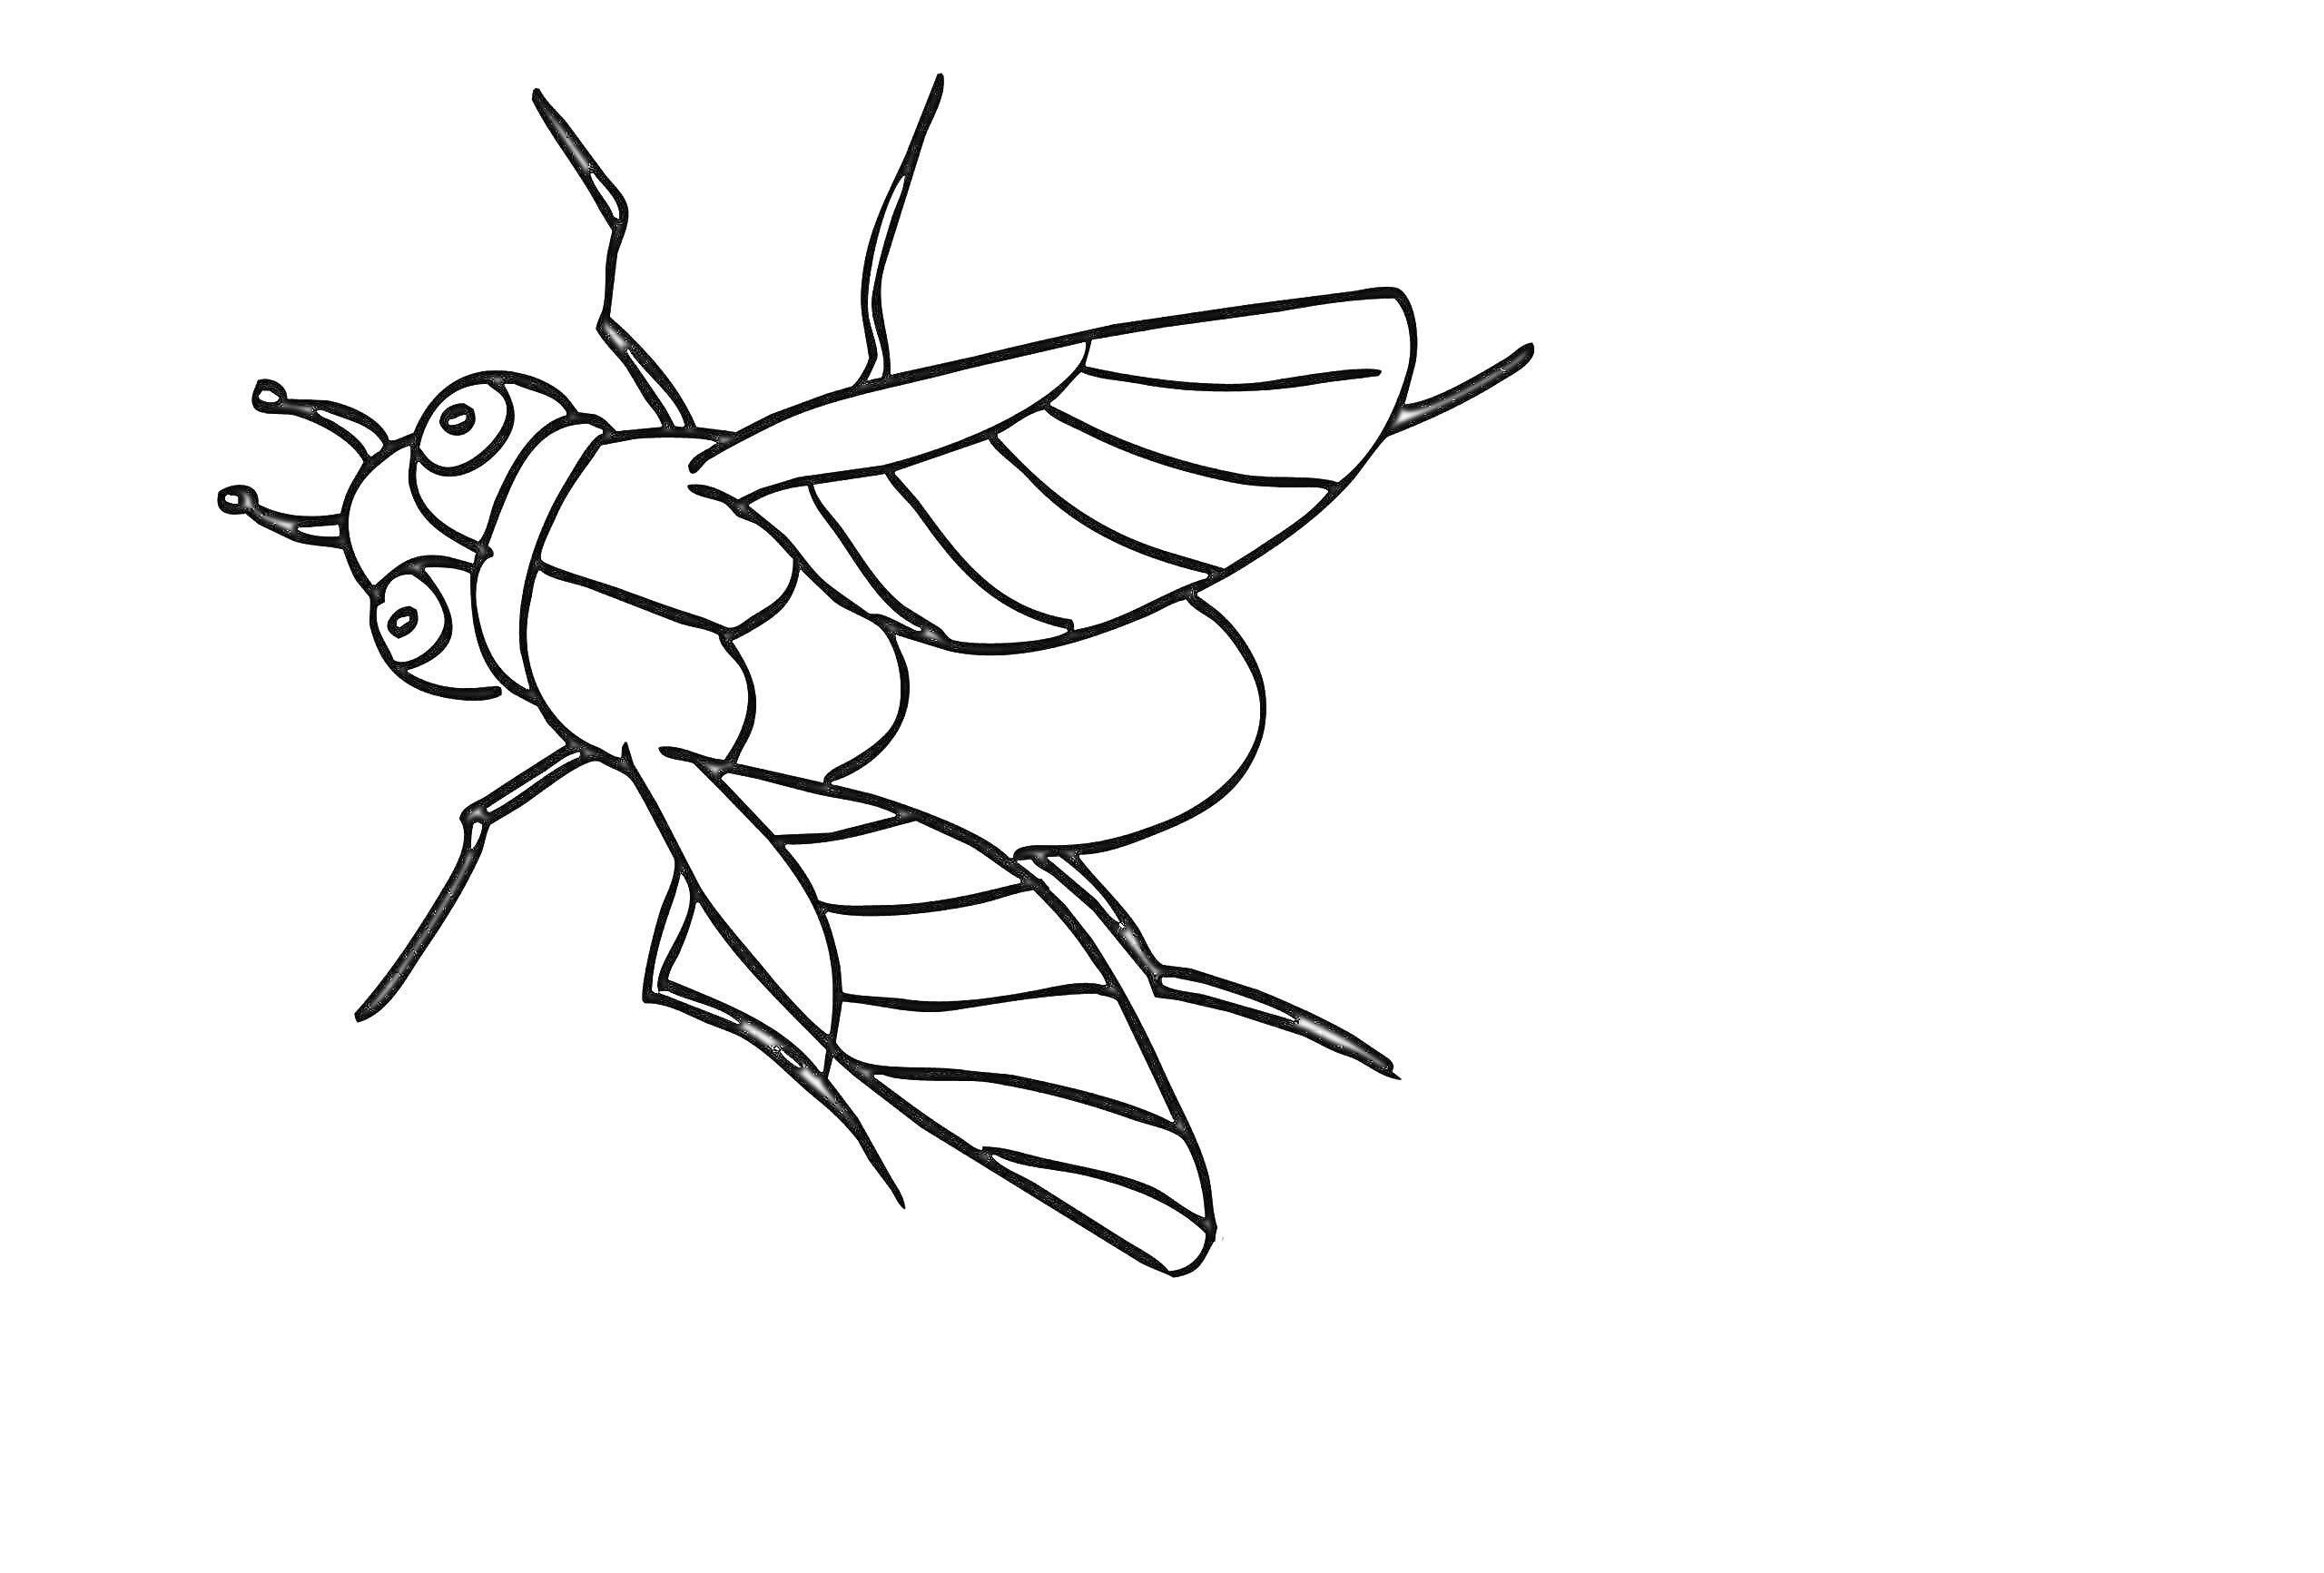 Раскраска Муха с большими глазами, четырьмя крыльями и шестью ногами